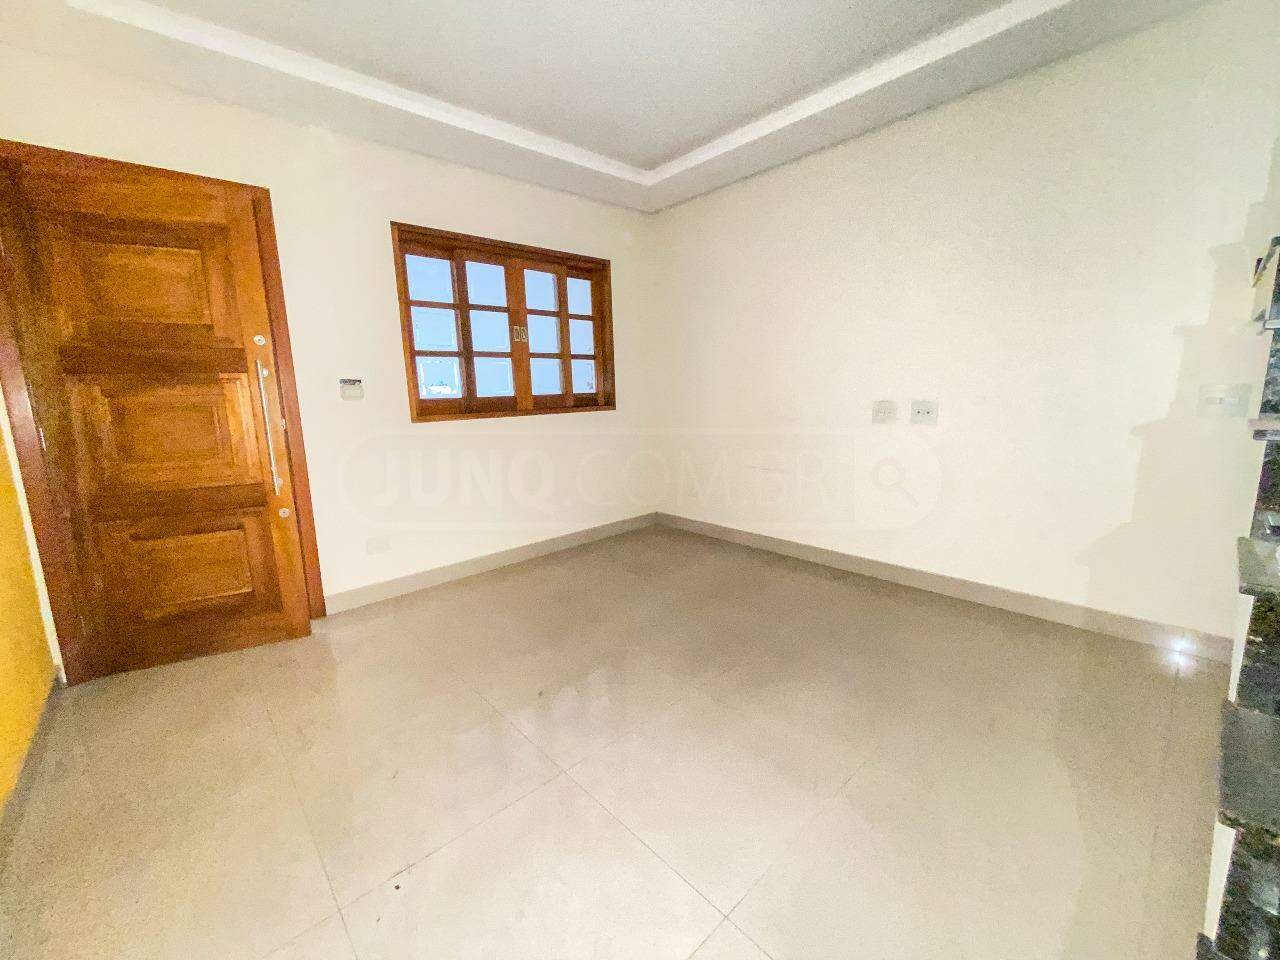 Casa à venda, 3 quartos, sendo 1 suíte, 1 vaga, no bairro Loteamento Chácaras Nazareth II em Piracicaba - SP